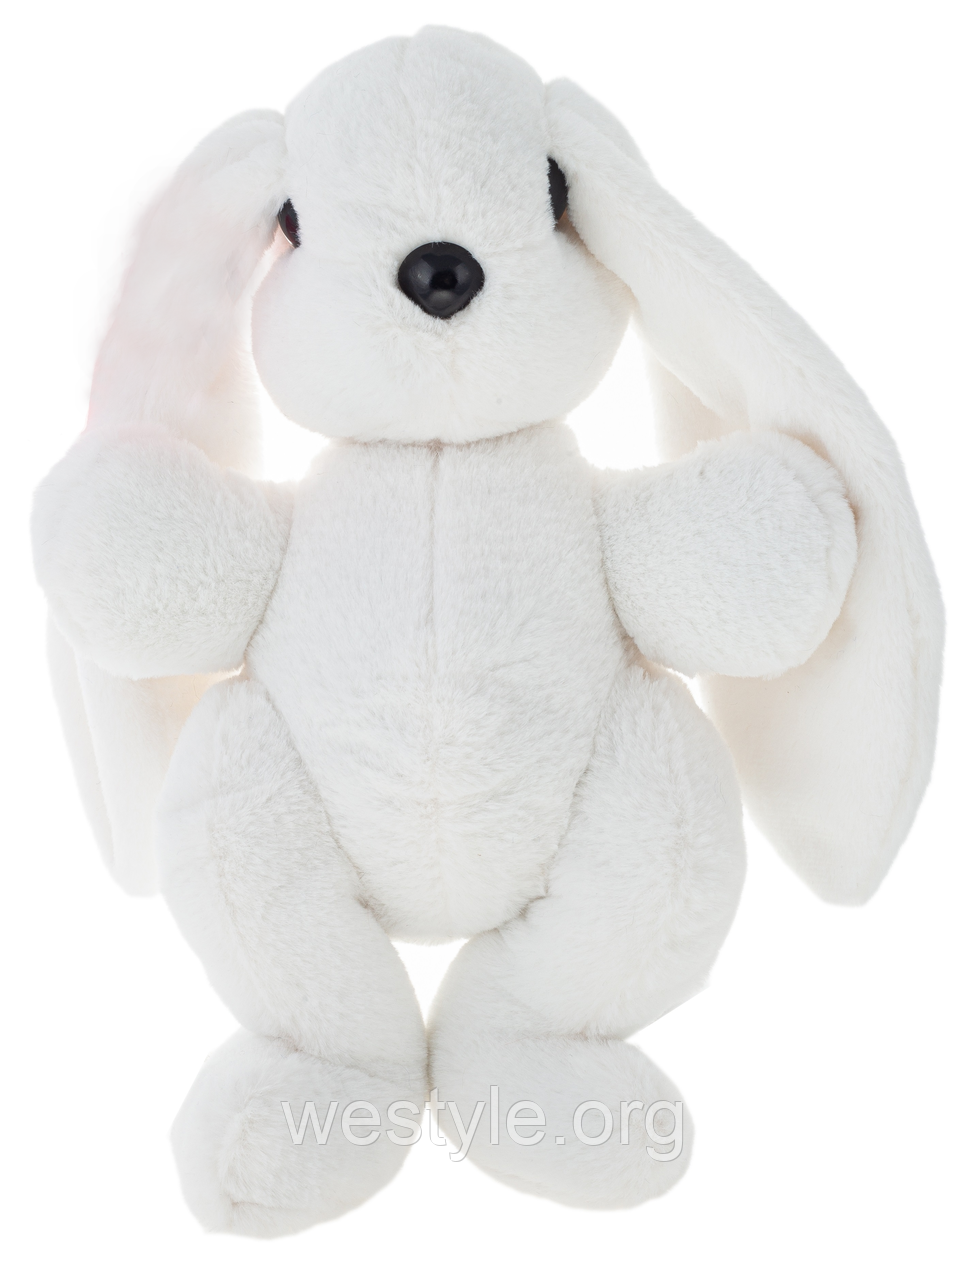 Плюшева іграшка Кролик білий 37